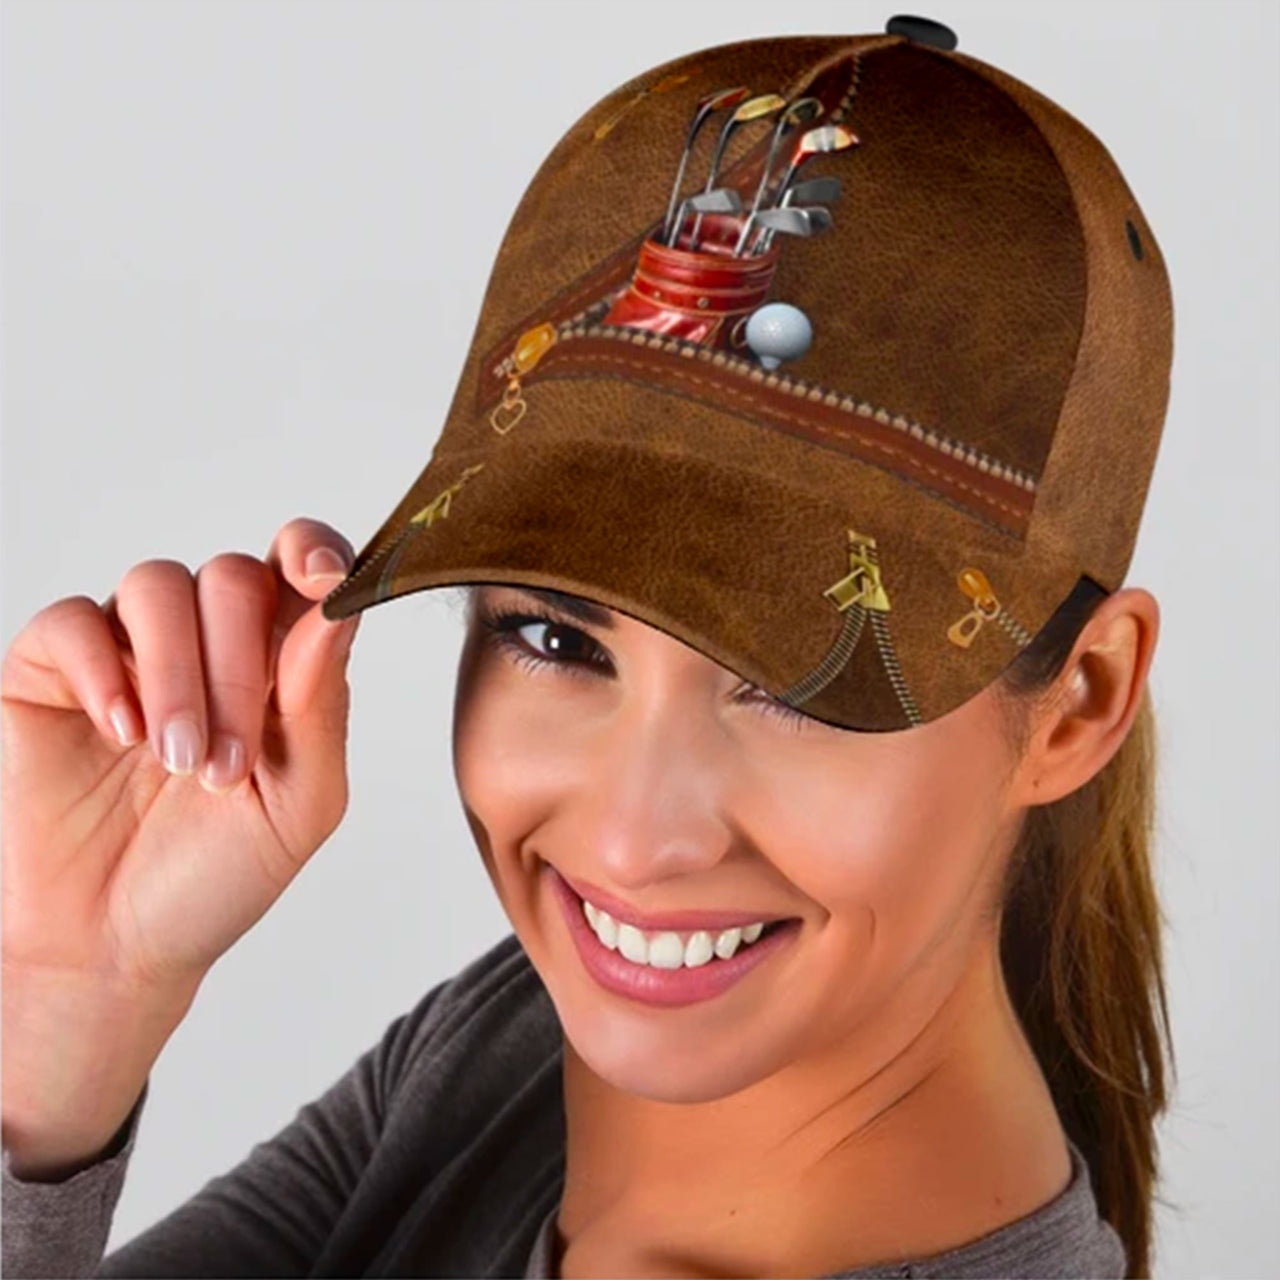 Funny Golf Gift Custom Hats for Men & Women 3D Prints Personalized Baseball Caps - Gift for Golfer